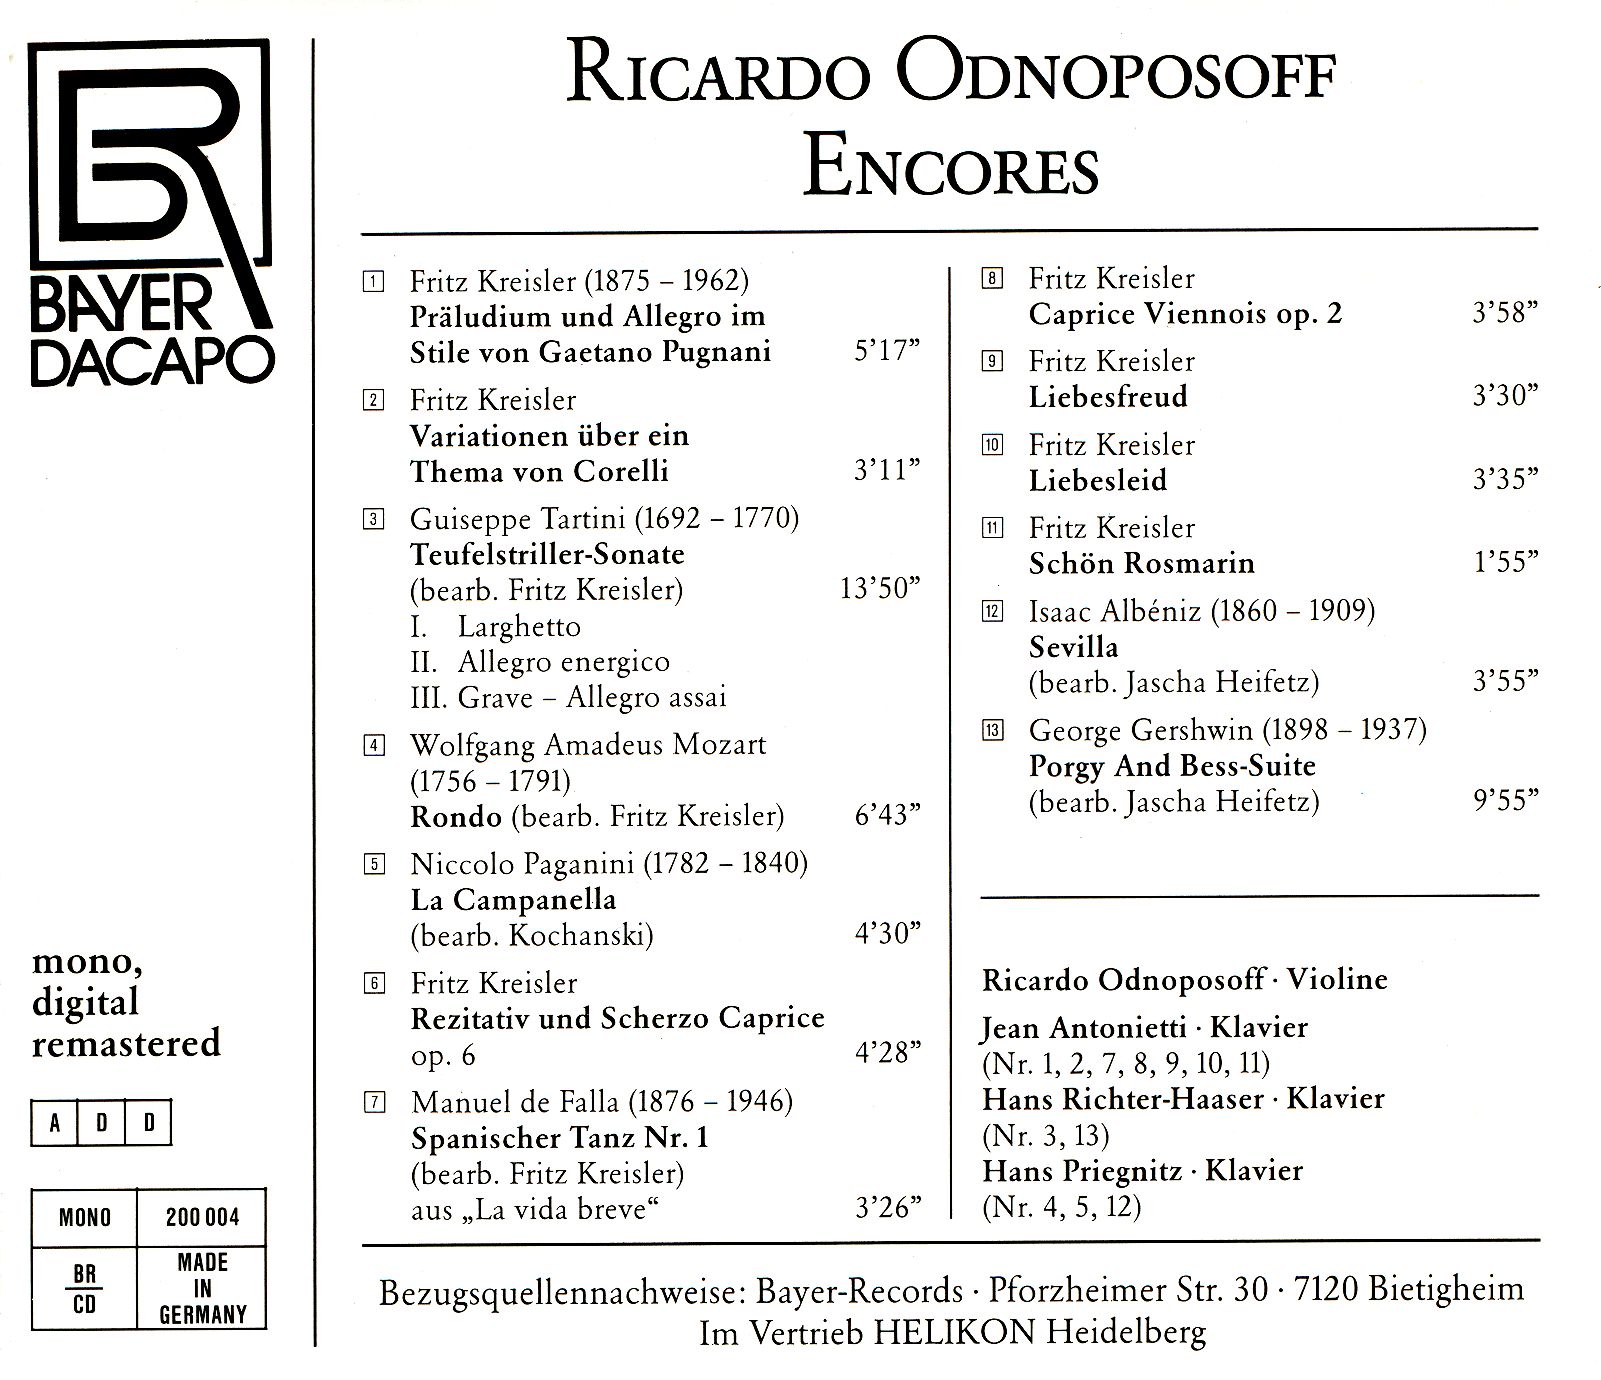 Ricardo Odnoposoff - Encores